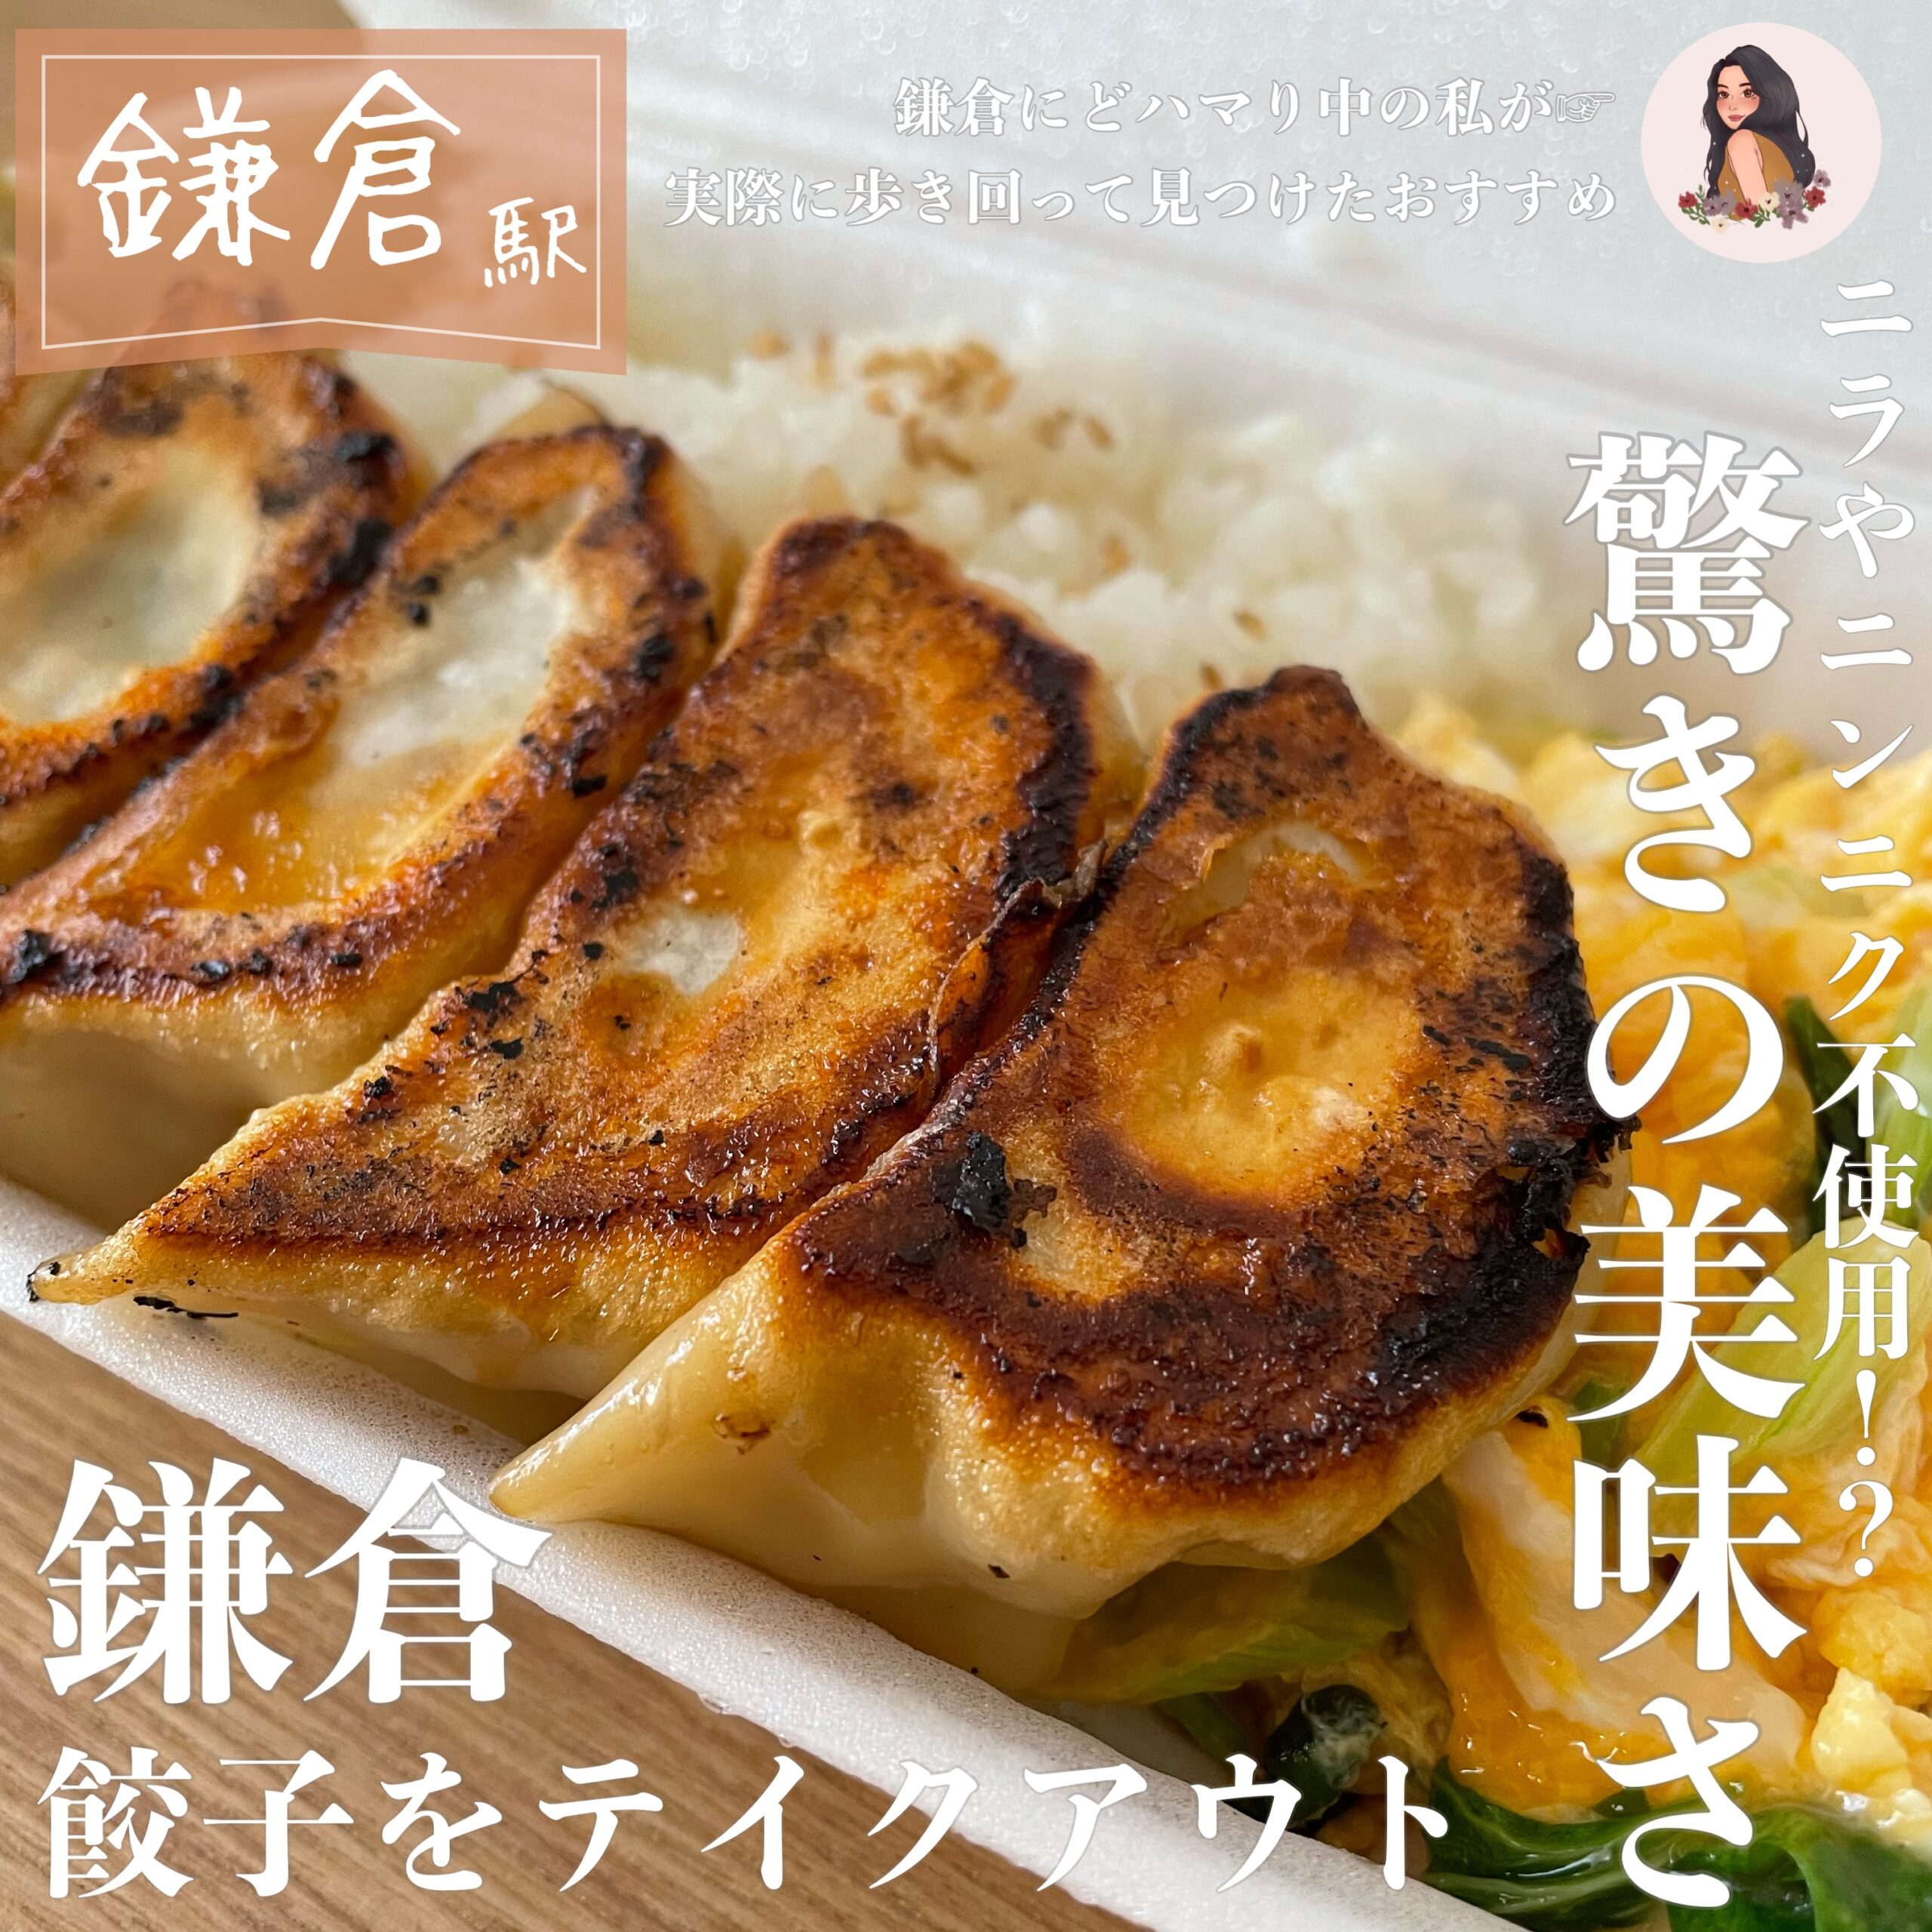 鎌倉 ニラ ニンニク 化学調味料不使用 山本餃子 でお弁当をテイクアウト Kamakura Log